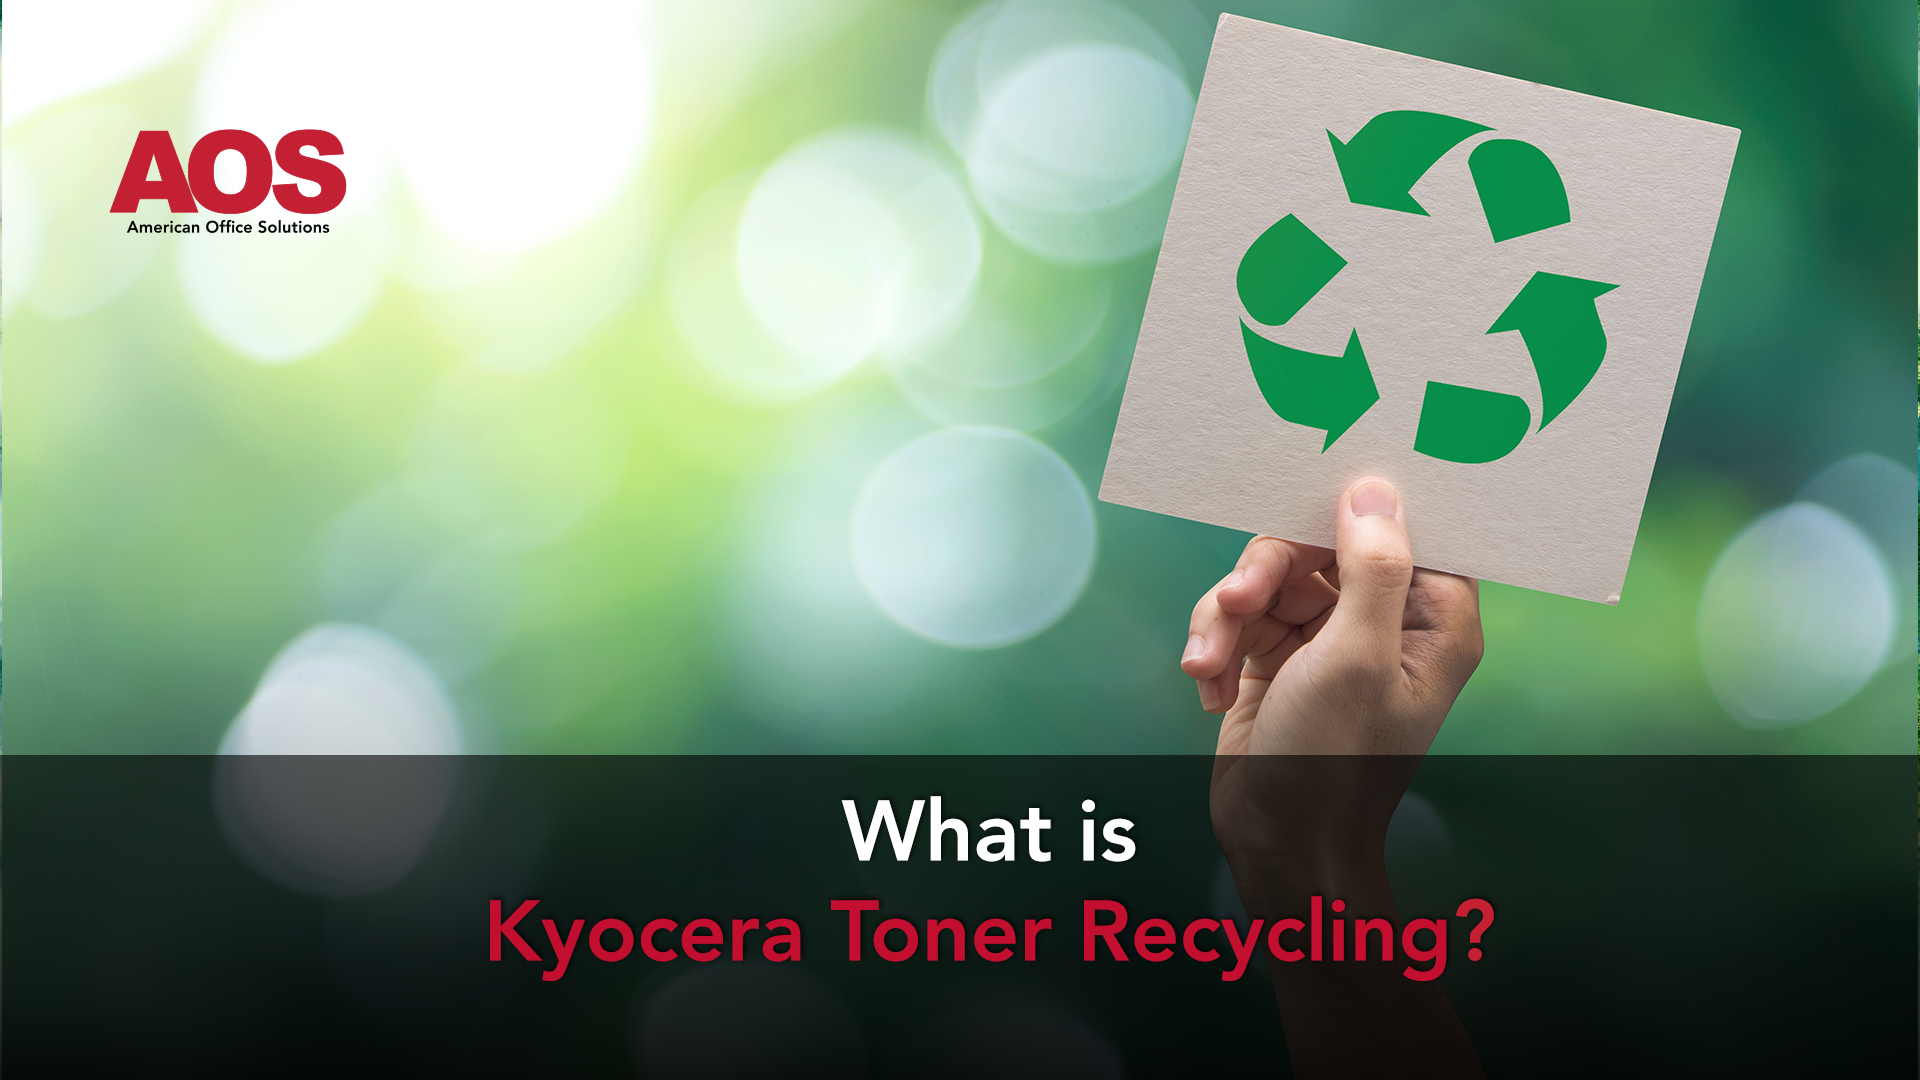 Kyocera Toner Recycling